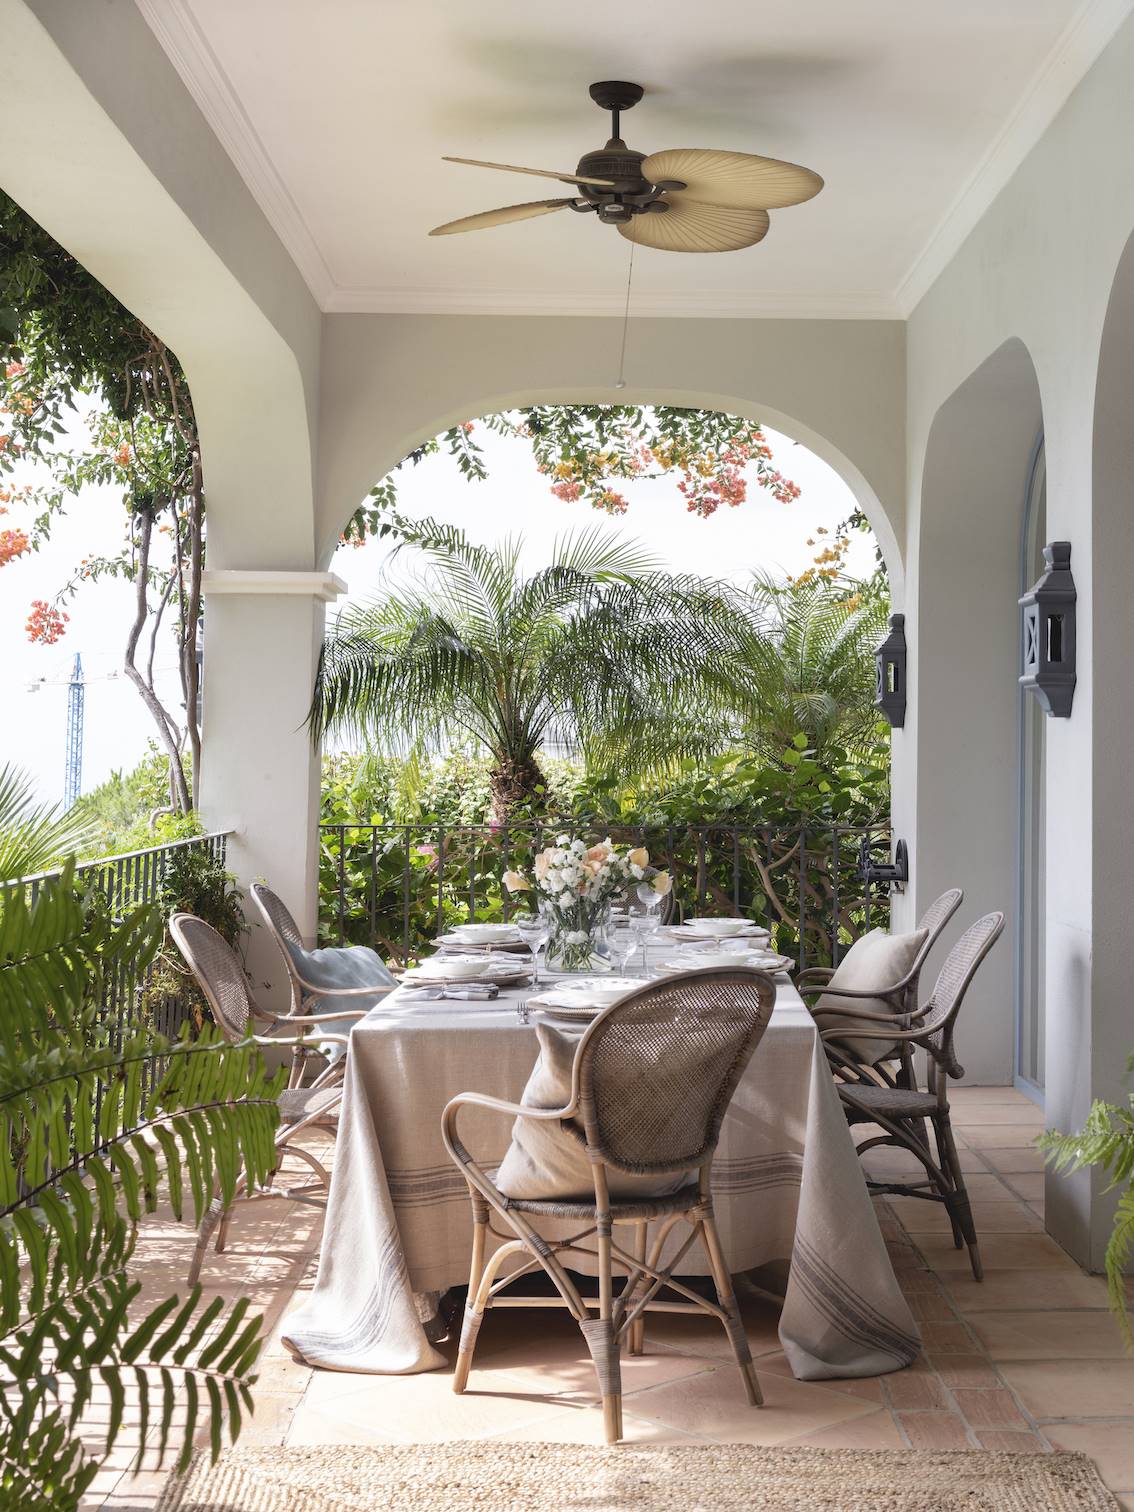 Comedor exterior de estilo colonial en tonos claros rodeado de plantas de exterior.